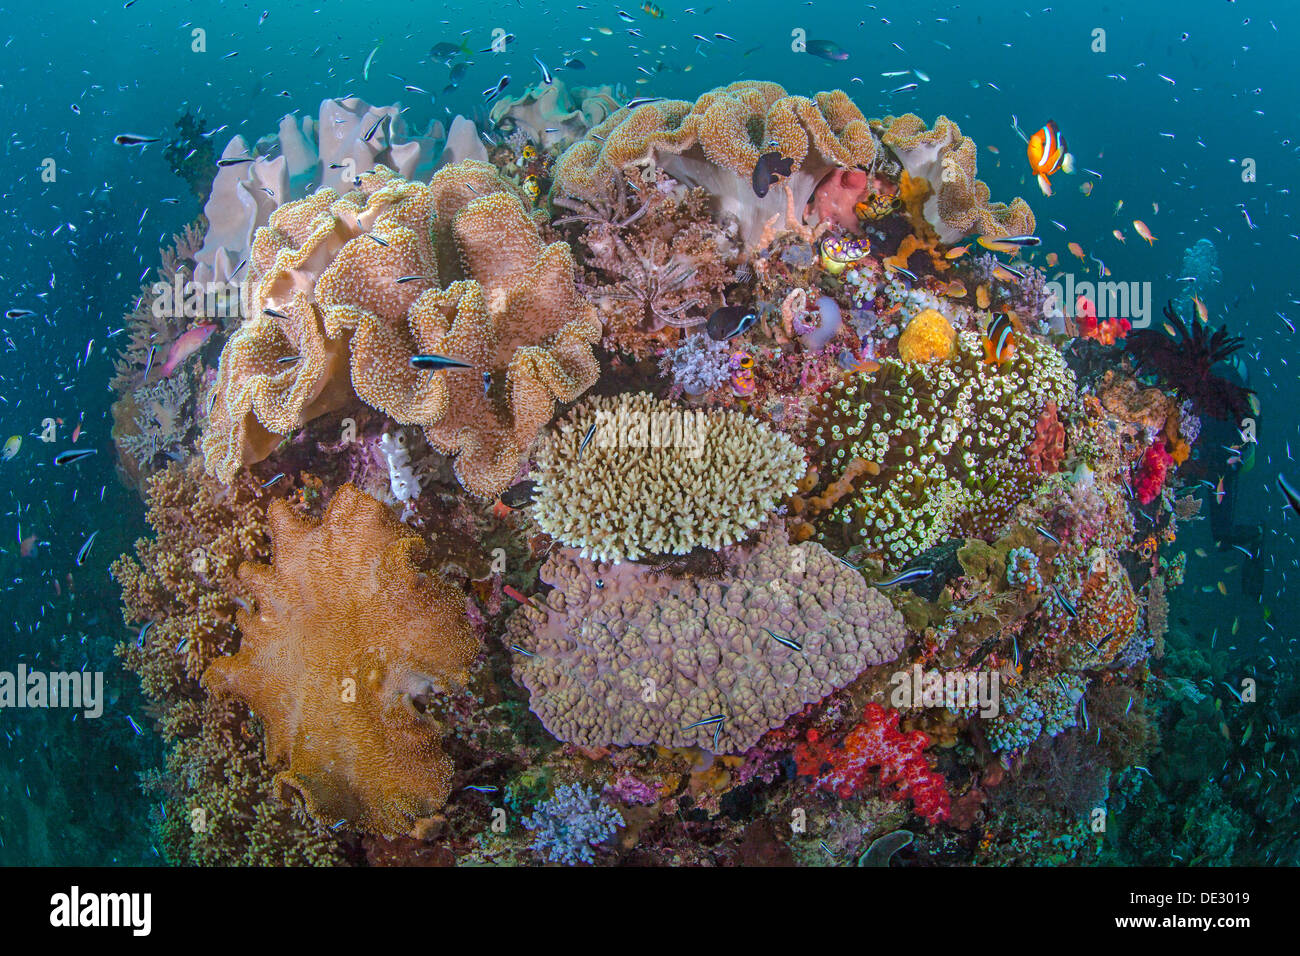 Les récifs coralliens dynamique avec la diversité de la vie marine. Raja Ampat, Indonésie, 2013. Banque D'Images